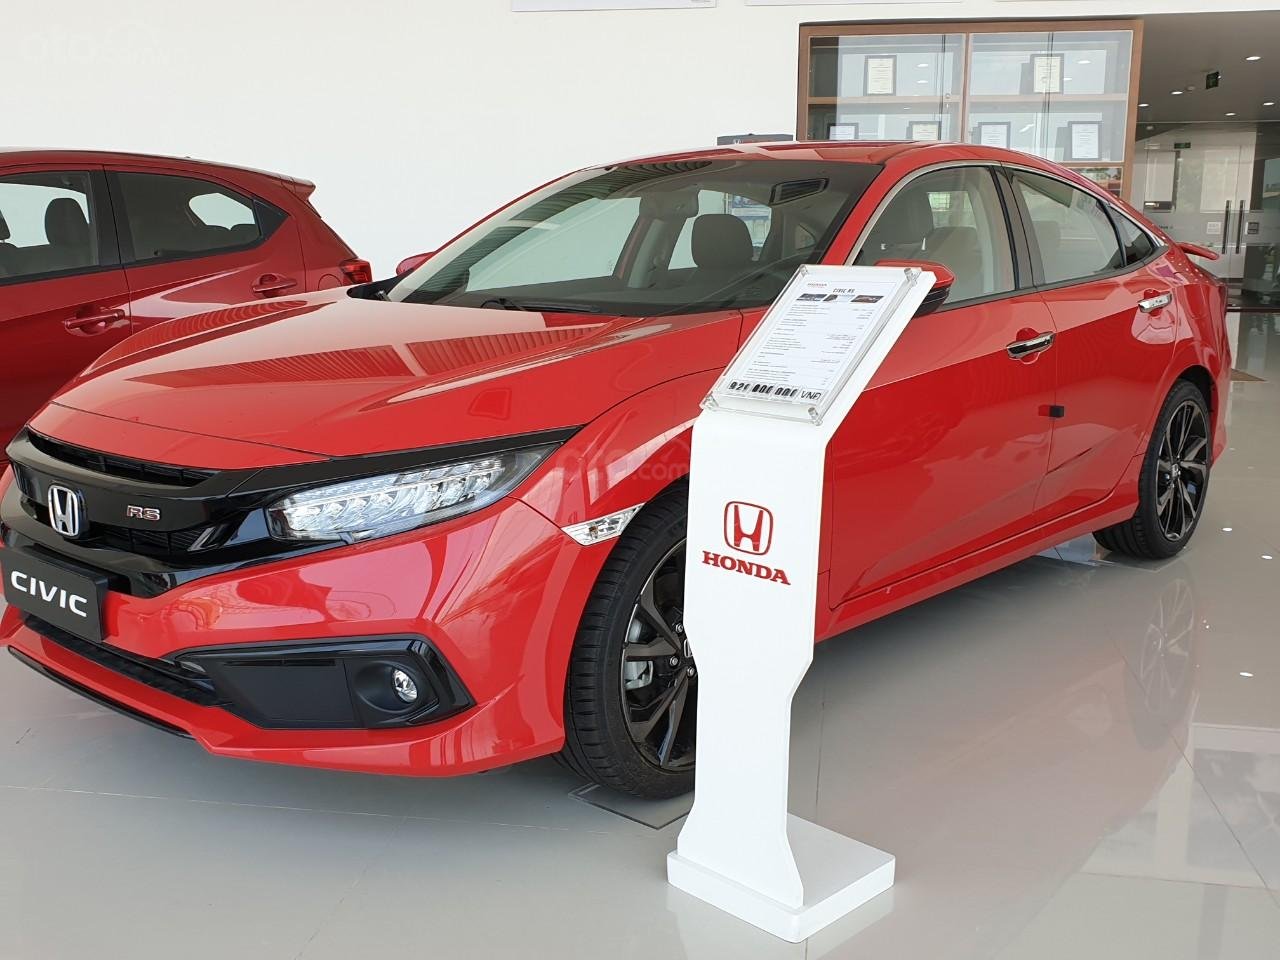  Honda Civic 2019 màu đỏ a3